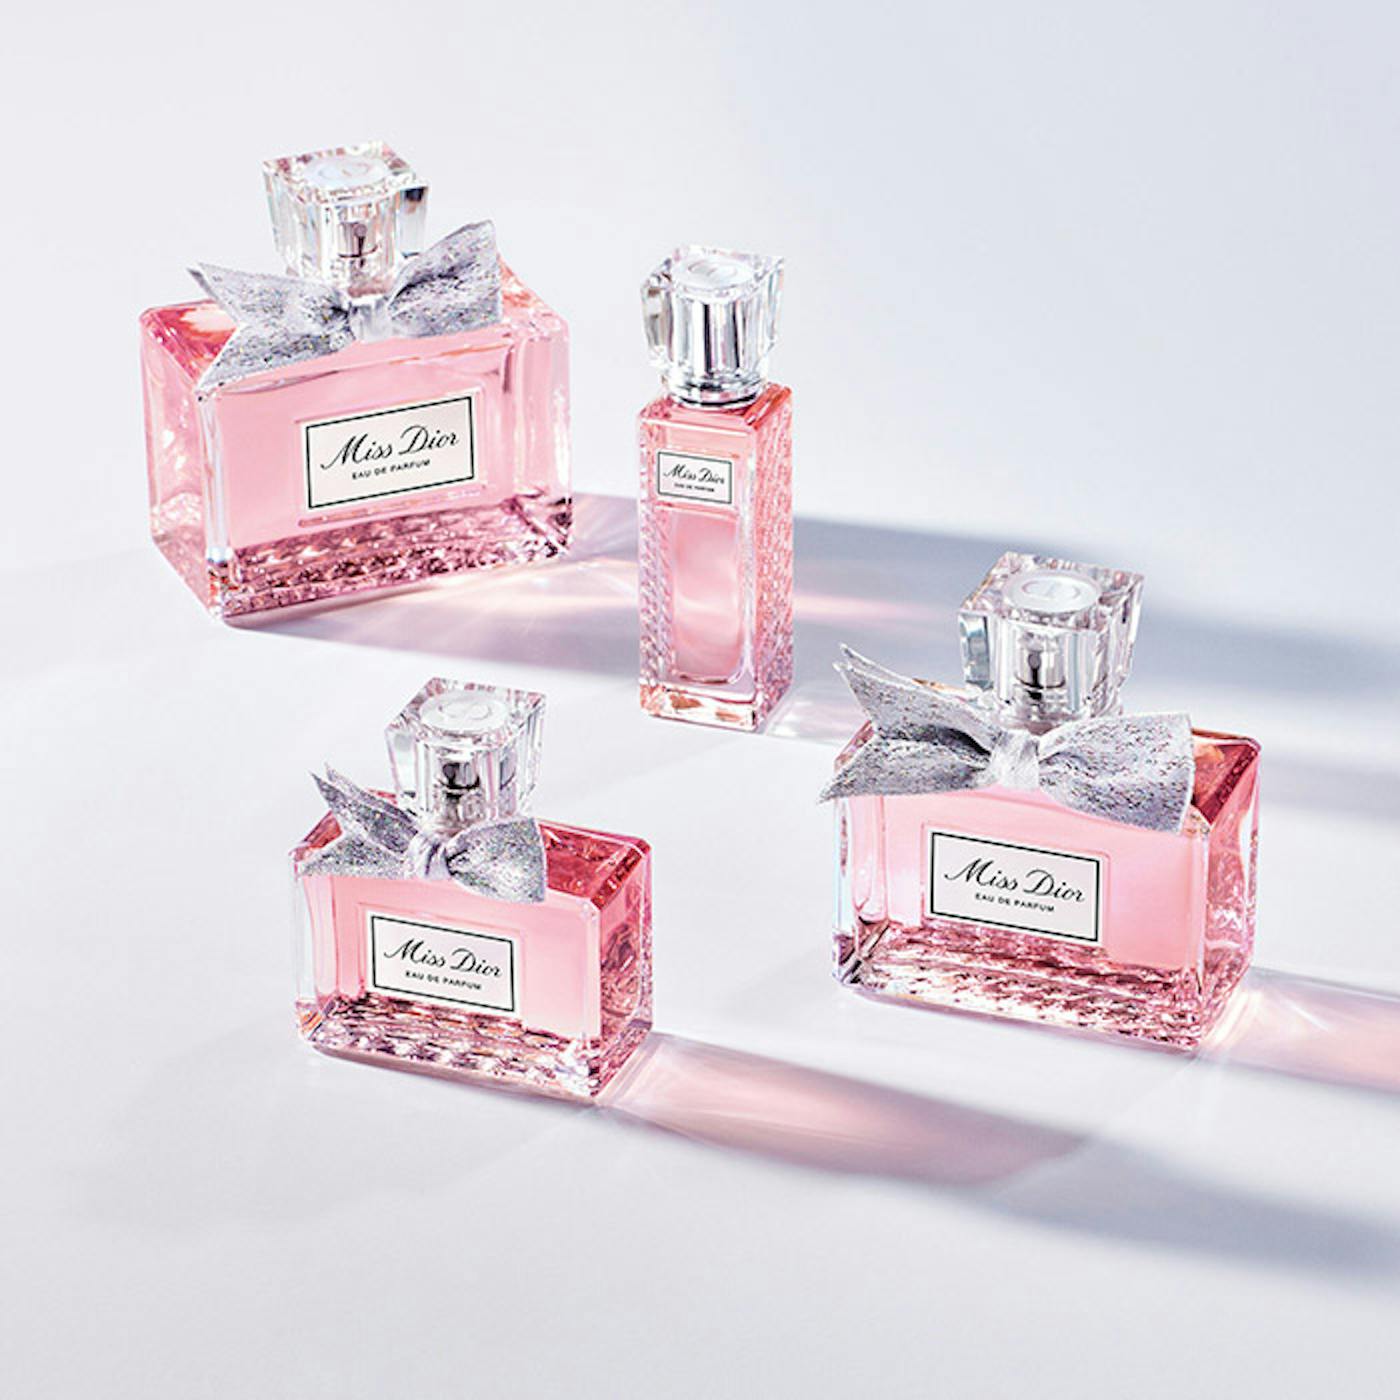 Give Sauvage Eau de Parfum for Men - Holiday Gift Idea